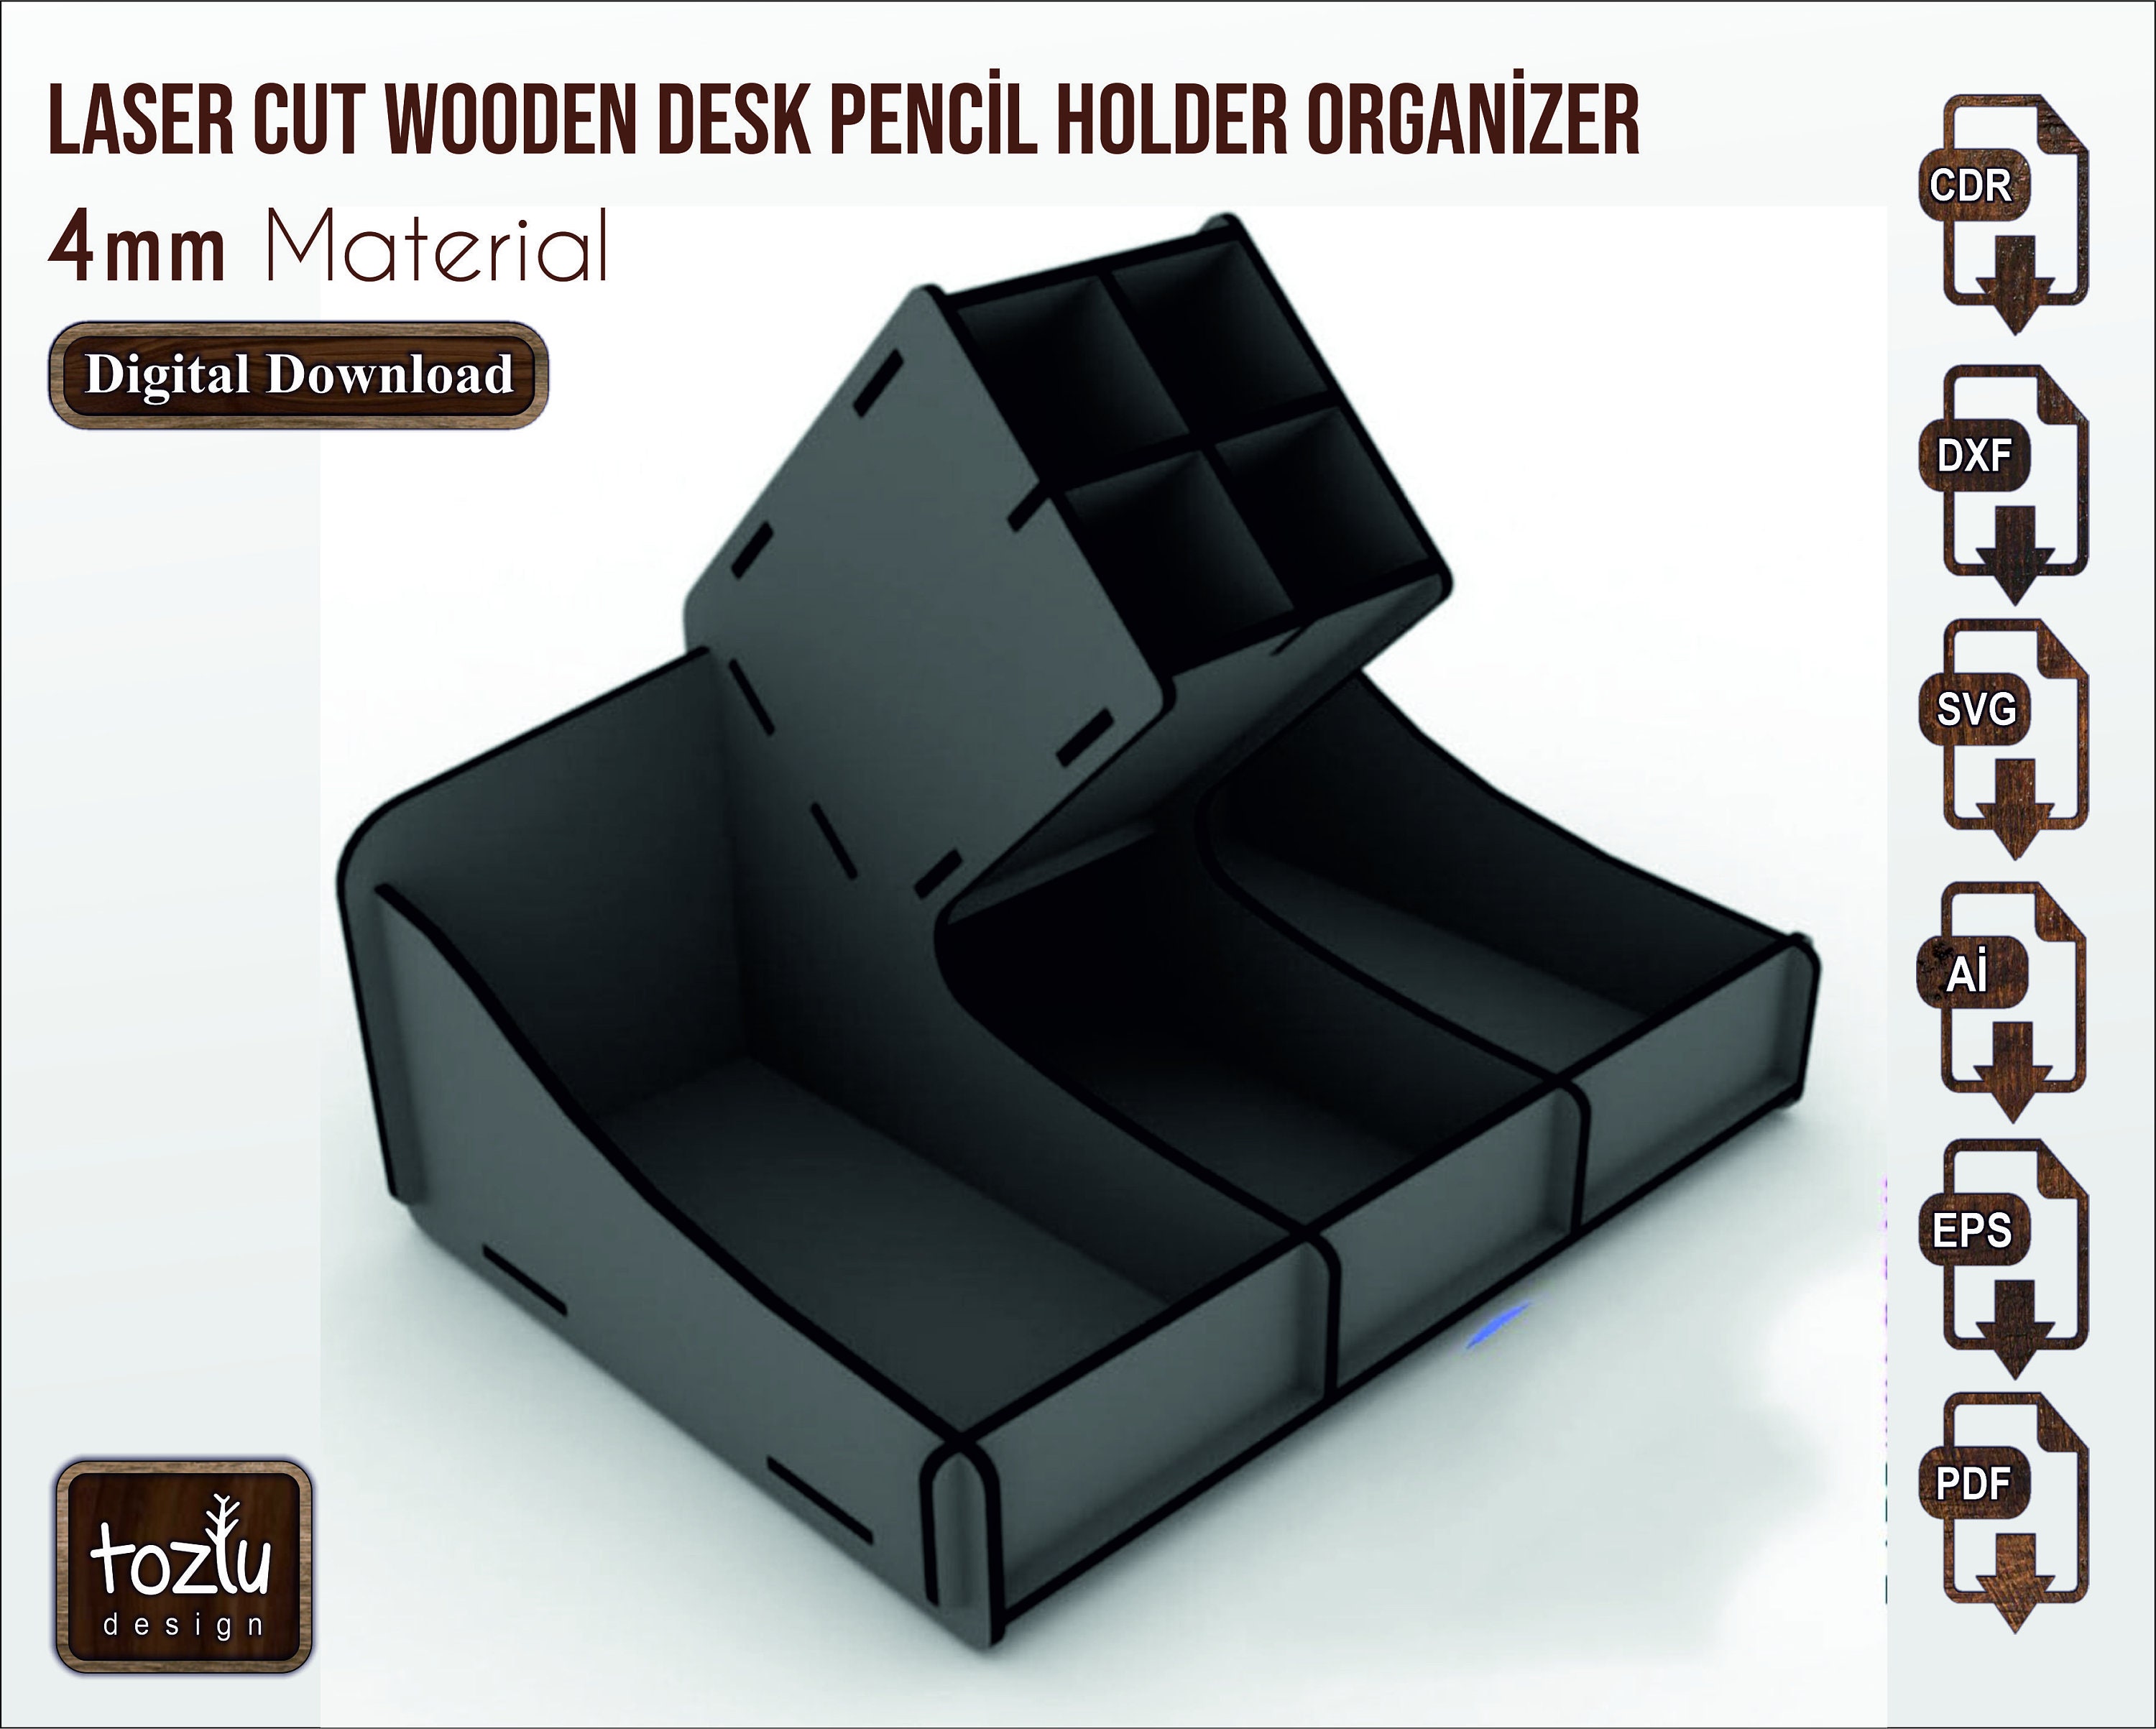 Laser Cut City Desk Organizer Model Storage Rack Pen Holder and